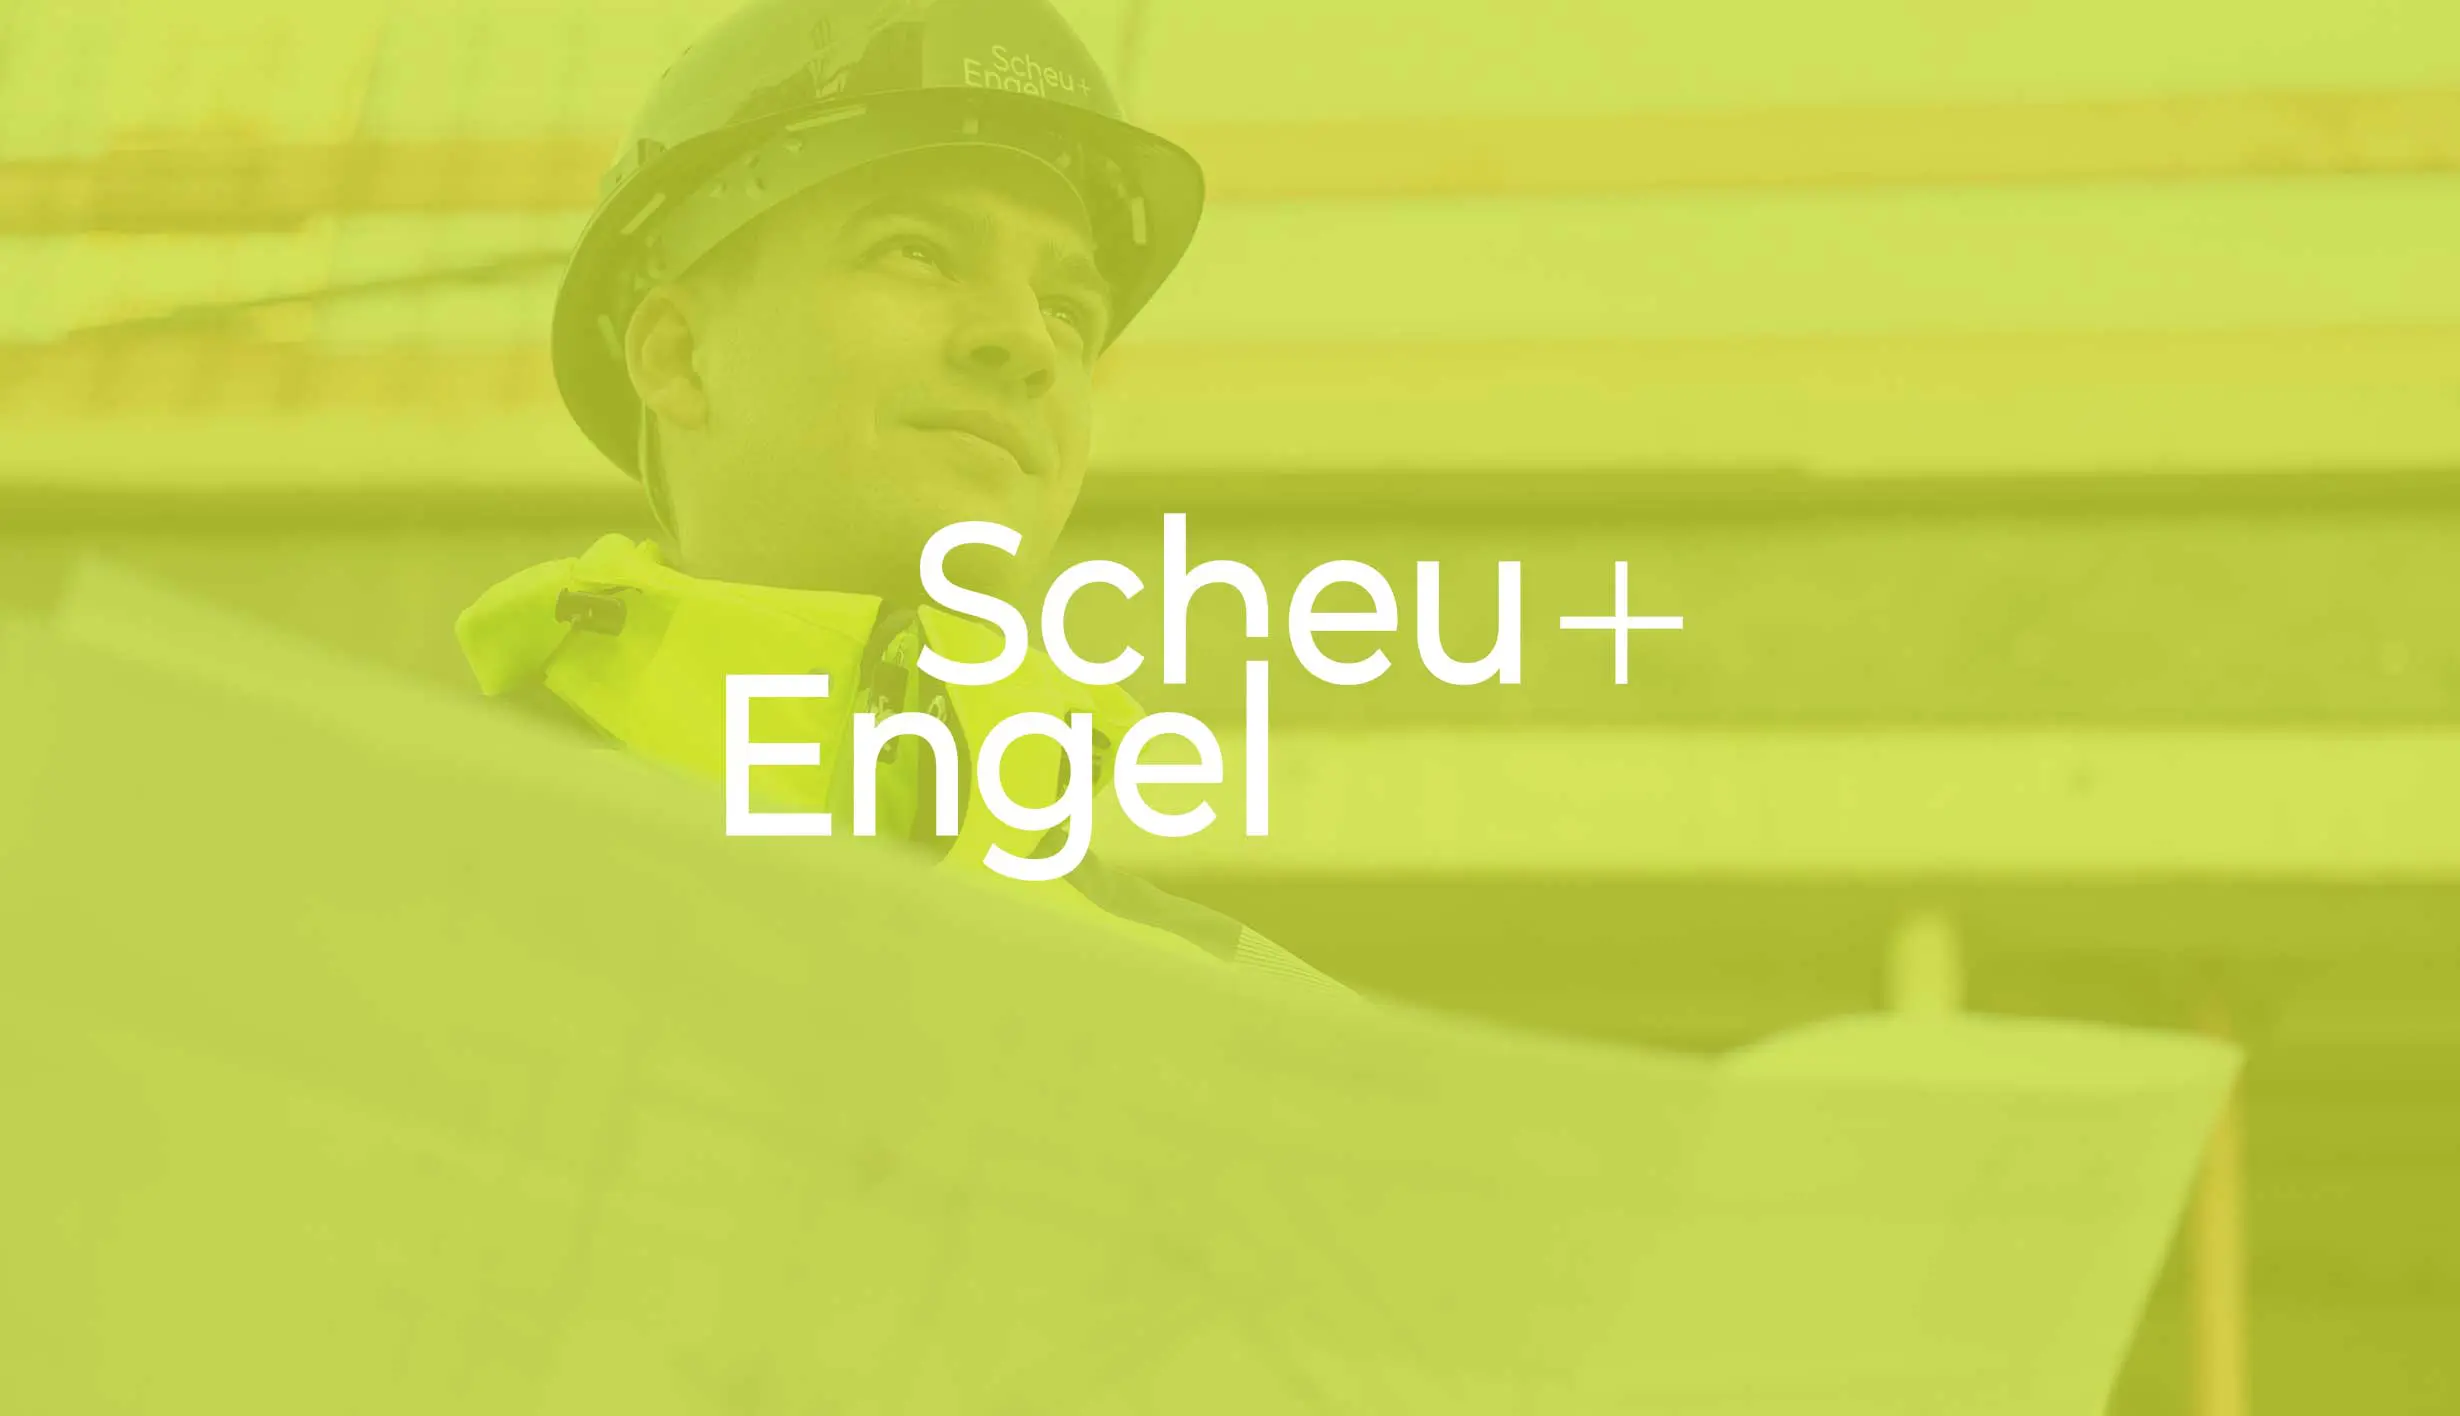 Scheu+Engel, Scheu und Engel, Construction Management, Corporate Design Agentur, Designagentur Frankfurt, Grafikdesign, Branding, Brand Design